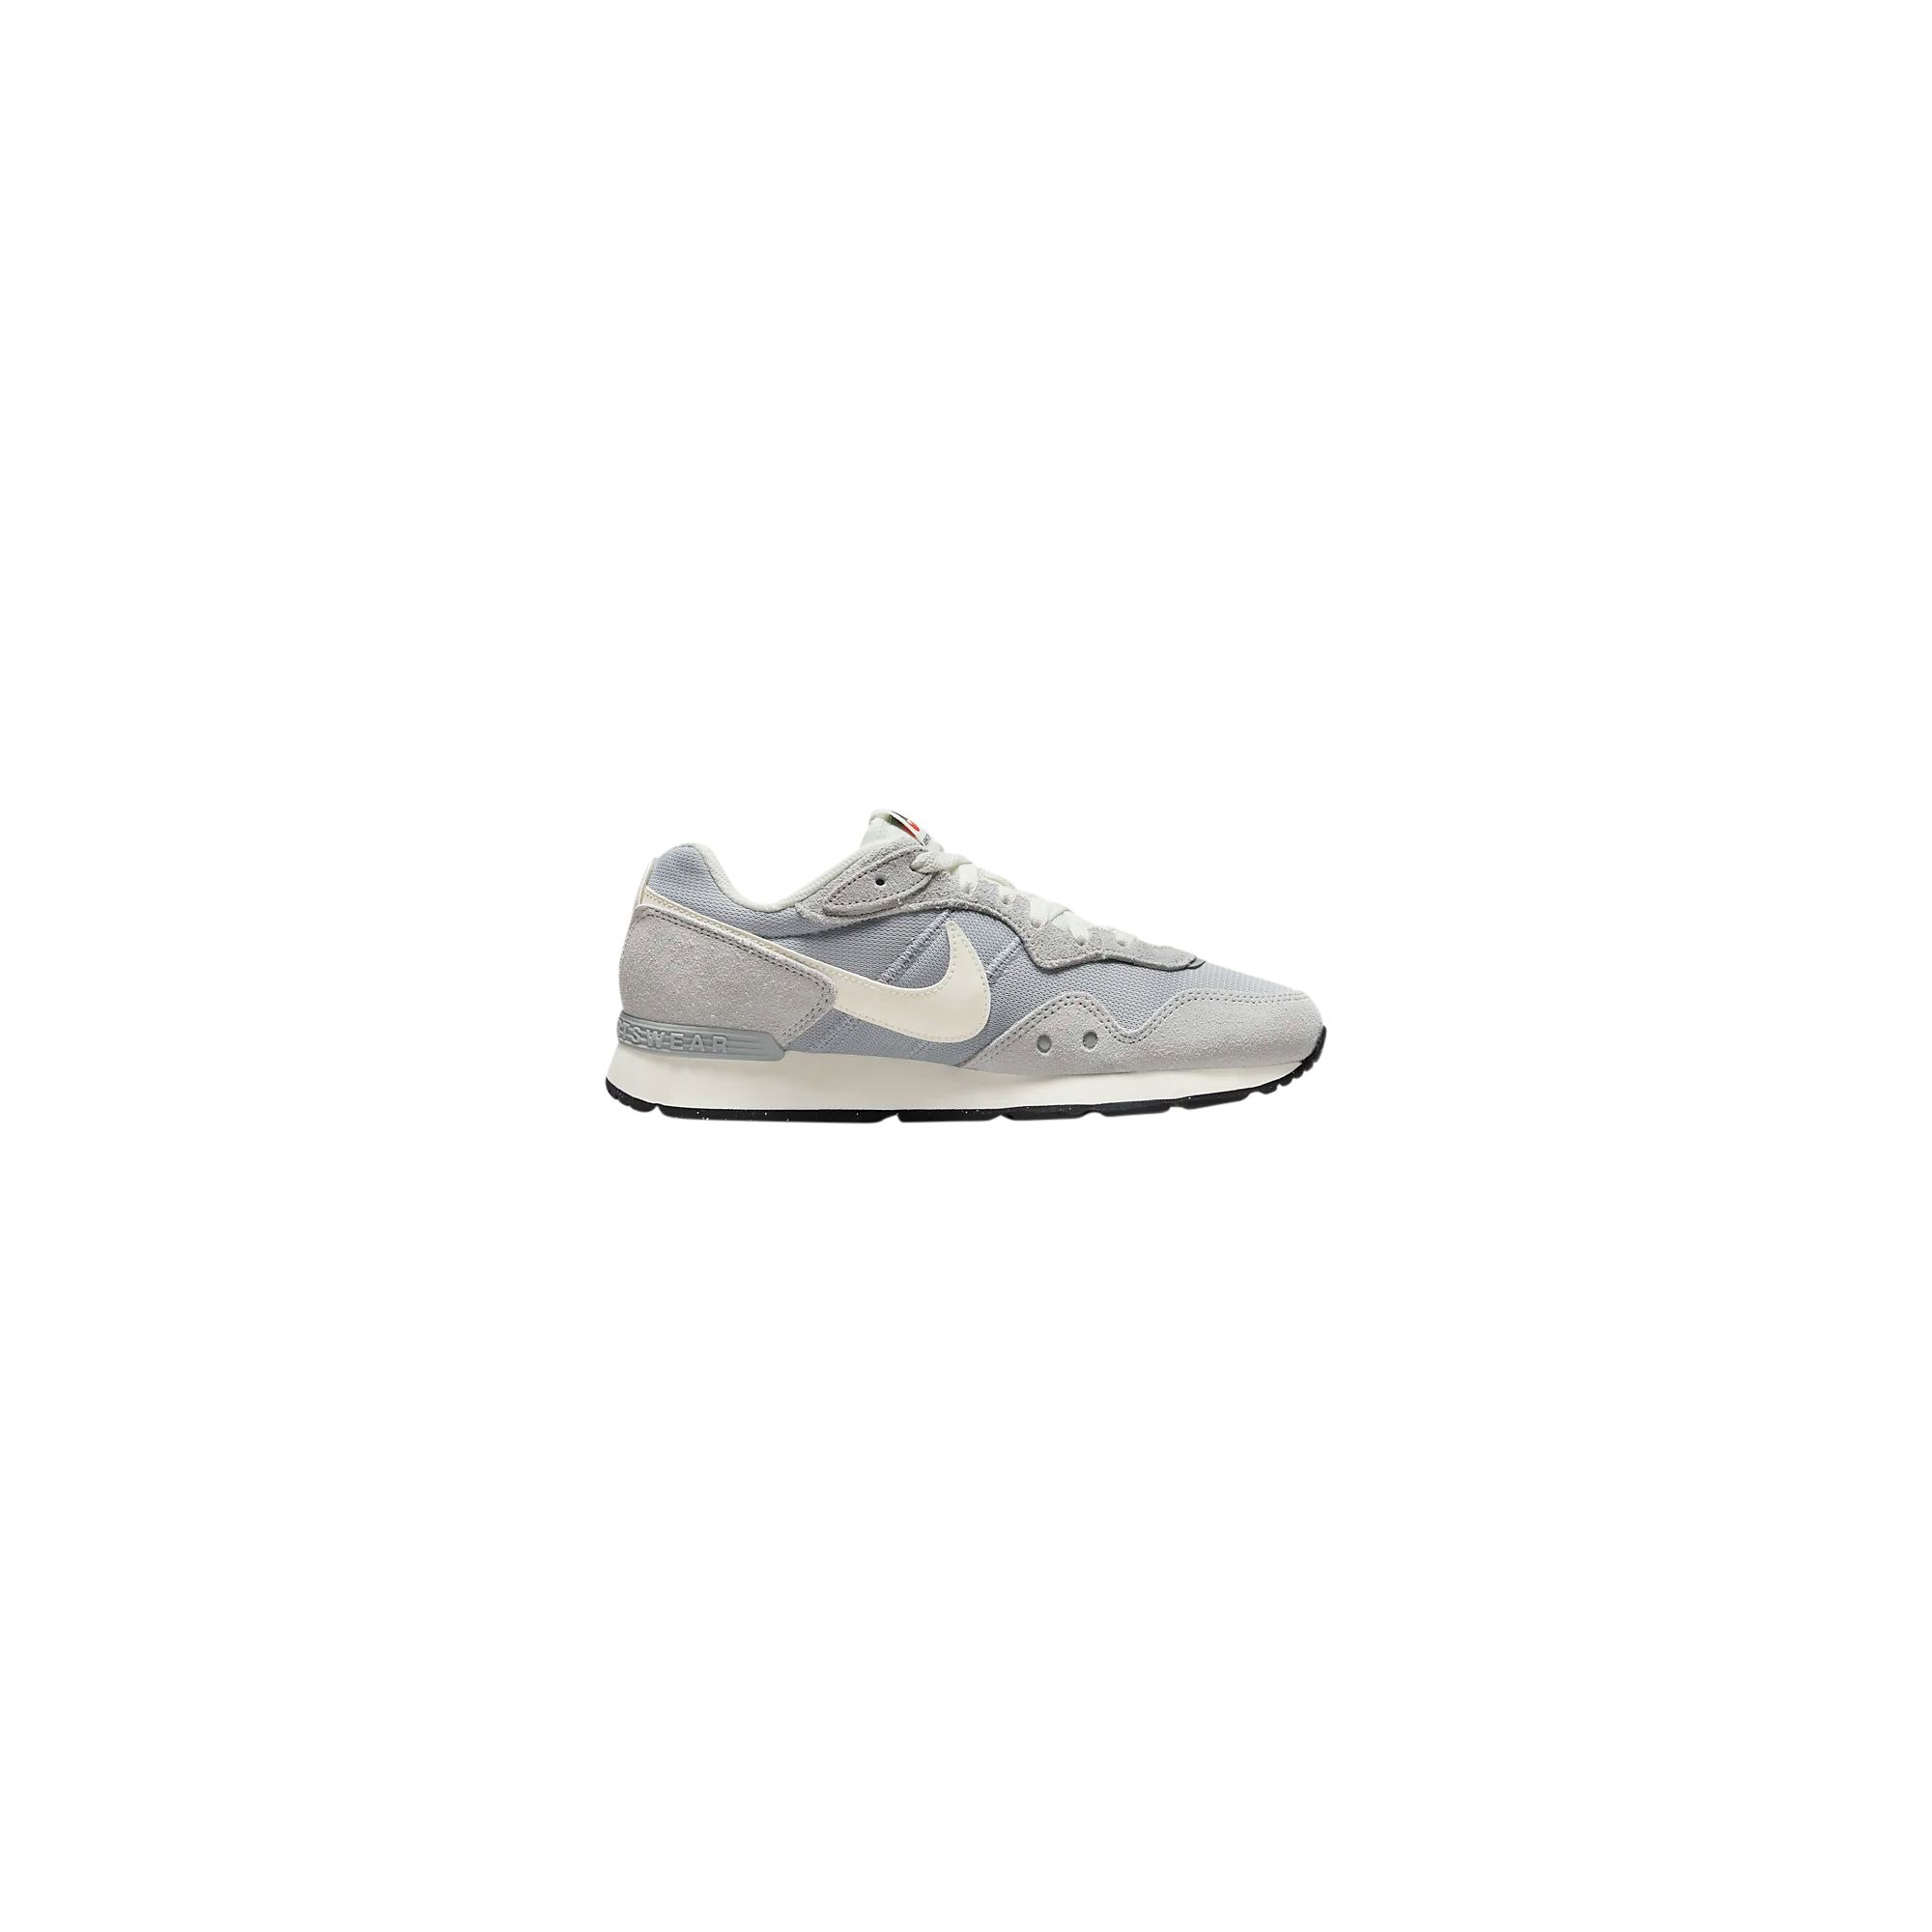 Venture Runner Nike - 2709763